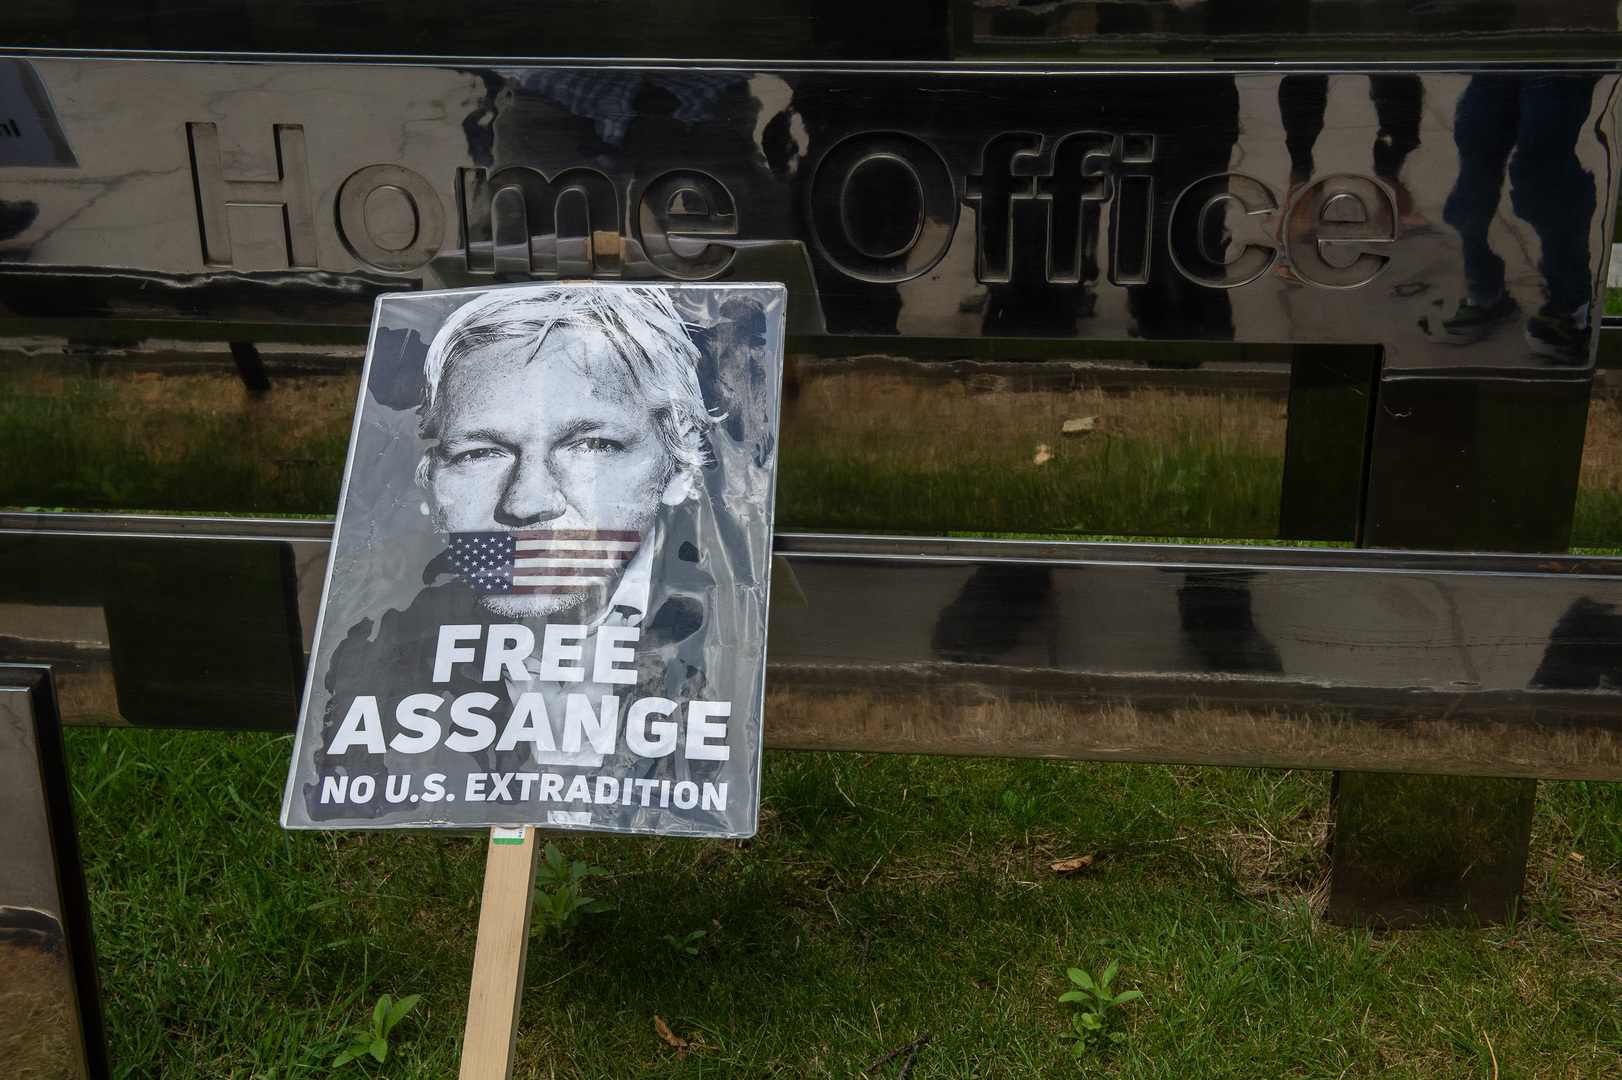 زوار أسانج في سفارة الإكوادور بلندن يرفعون دعوى قضائية ضد المخابرات الأمريكية